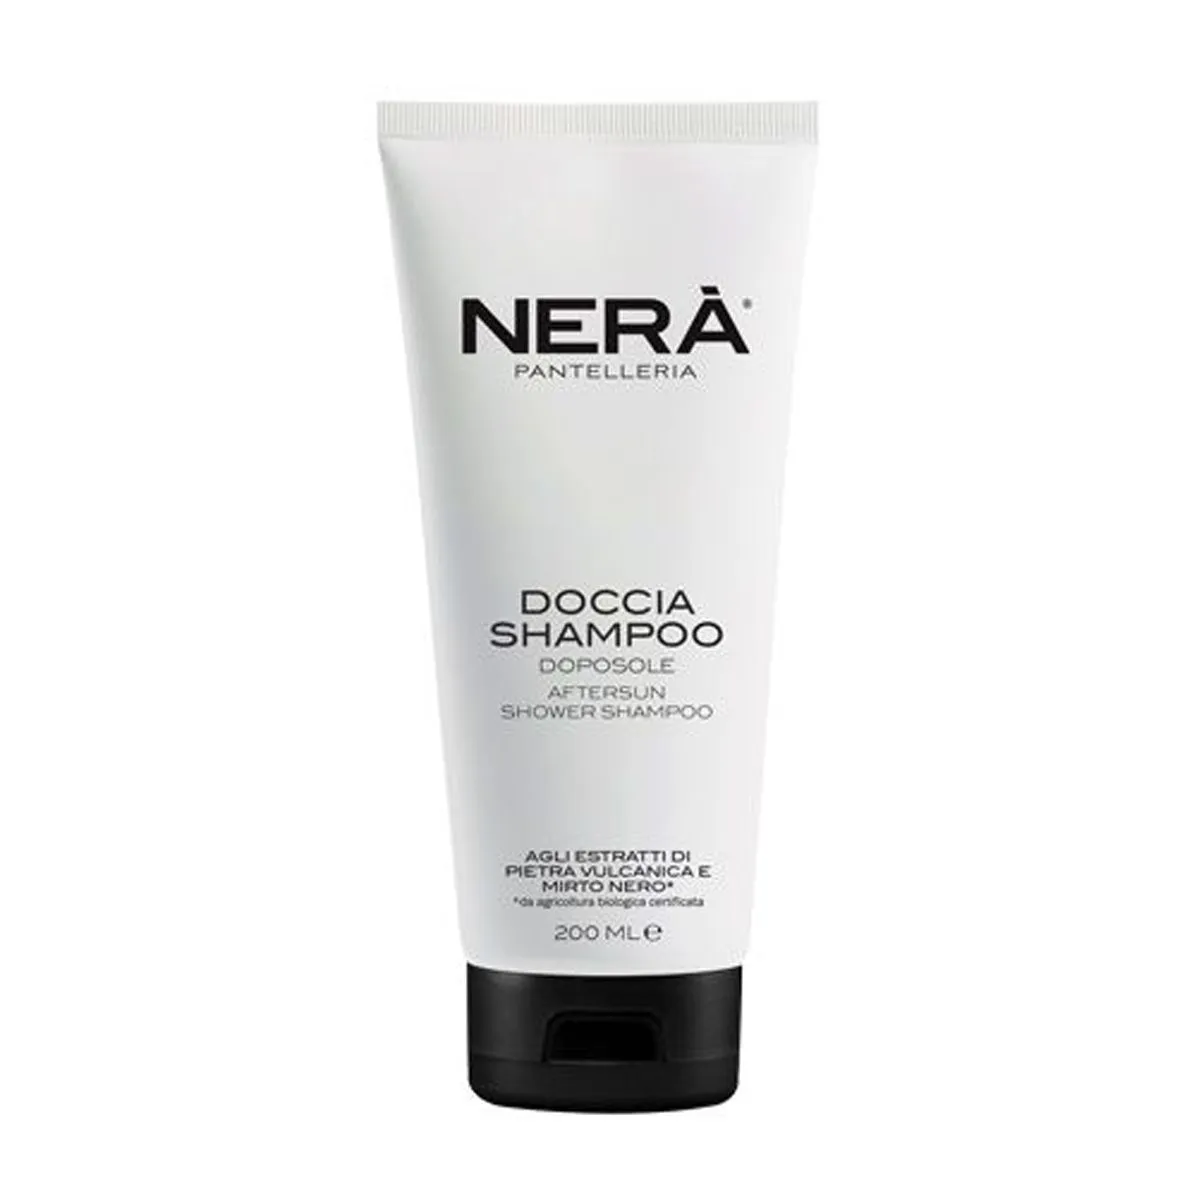  Doccia Shampoo Doposole 200ml